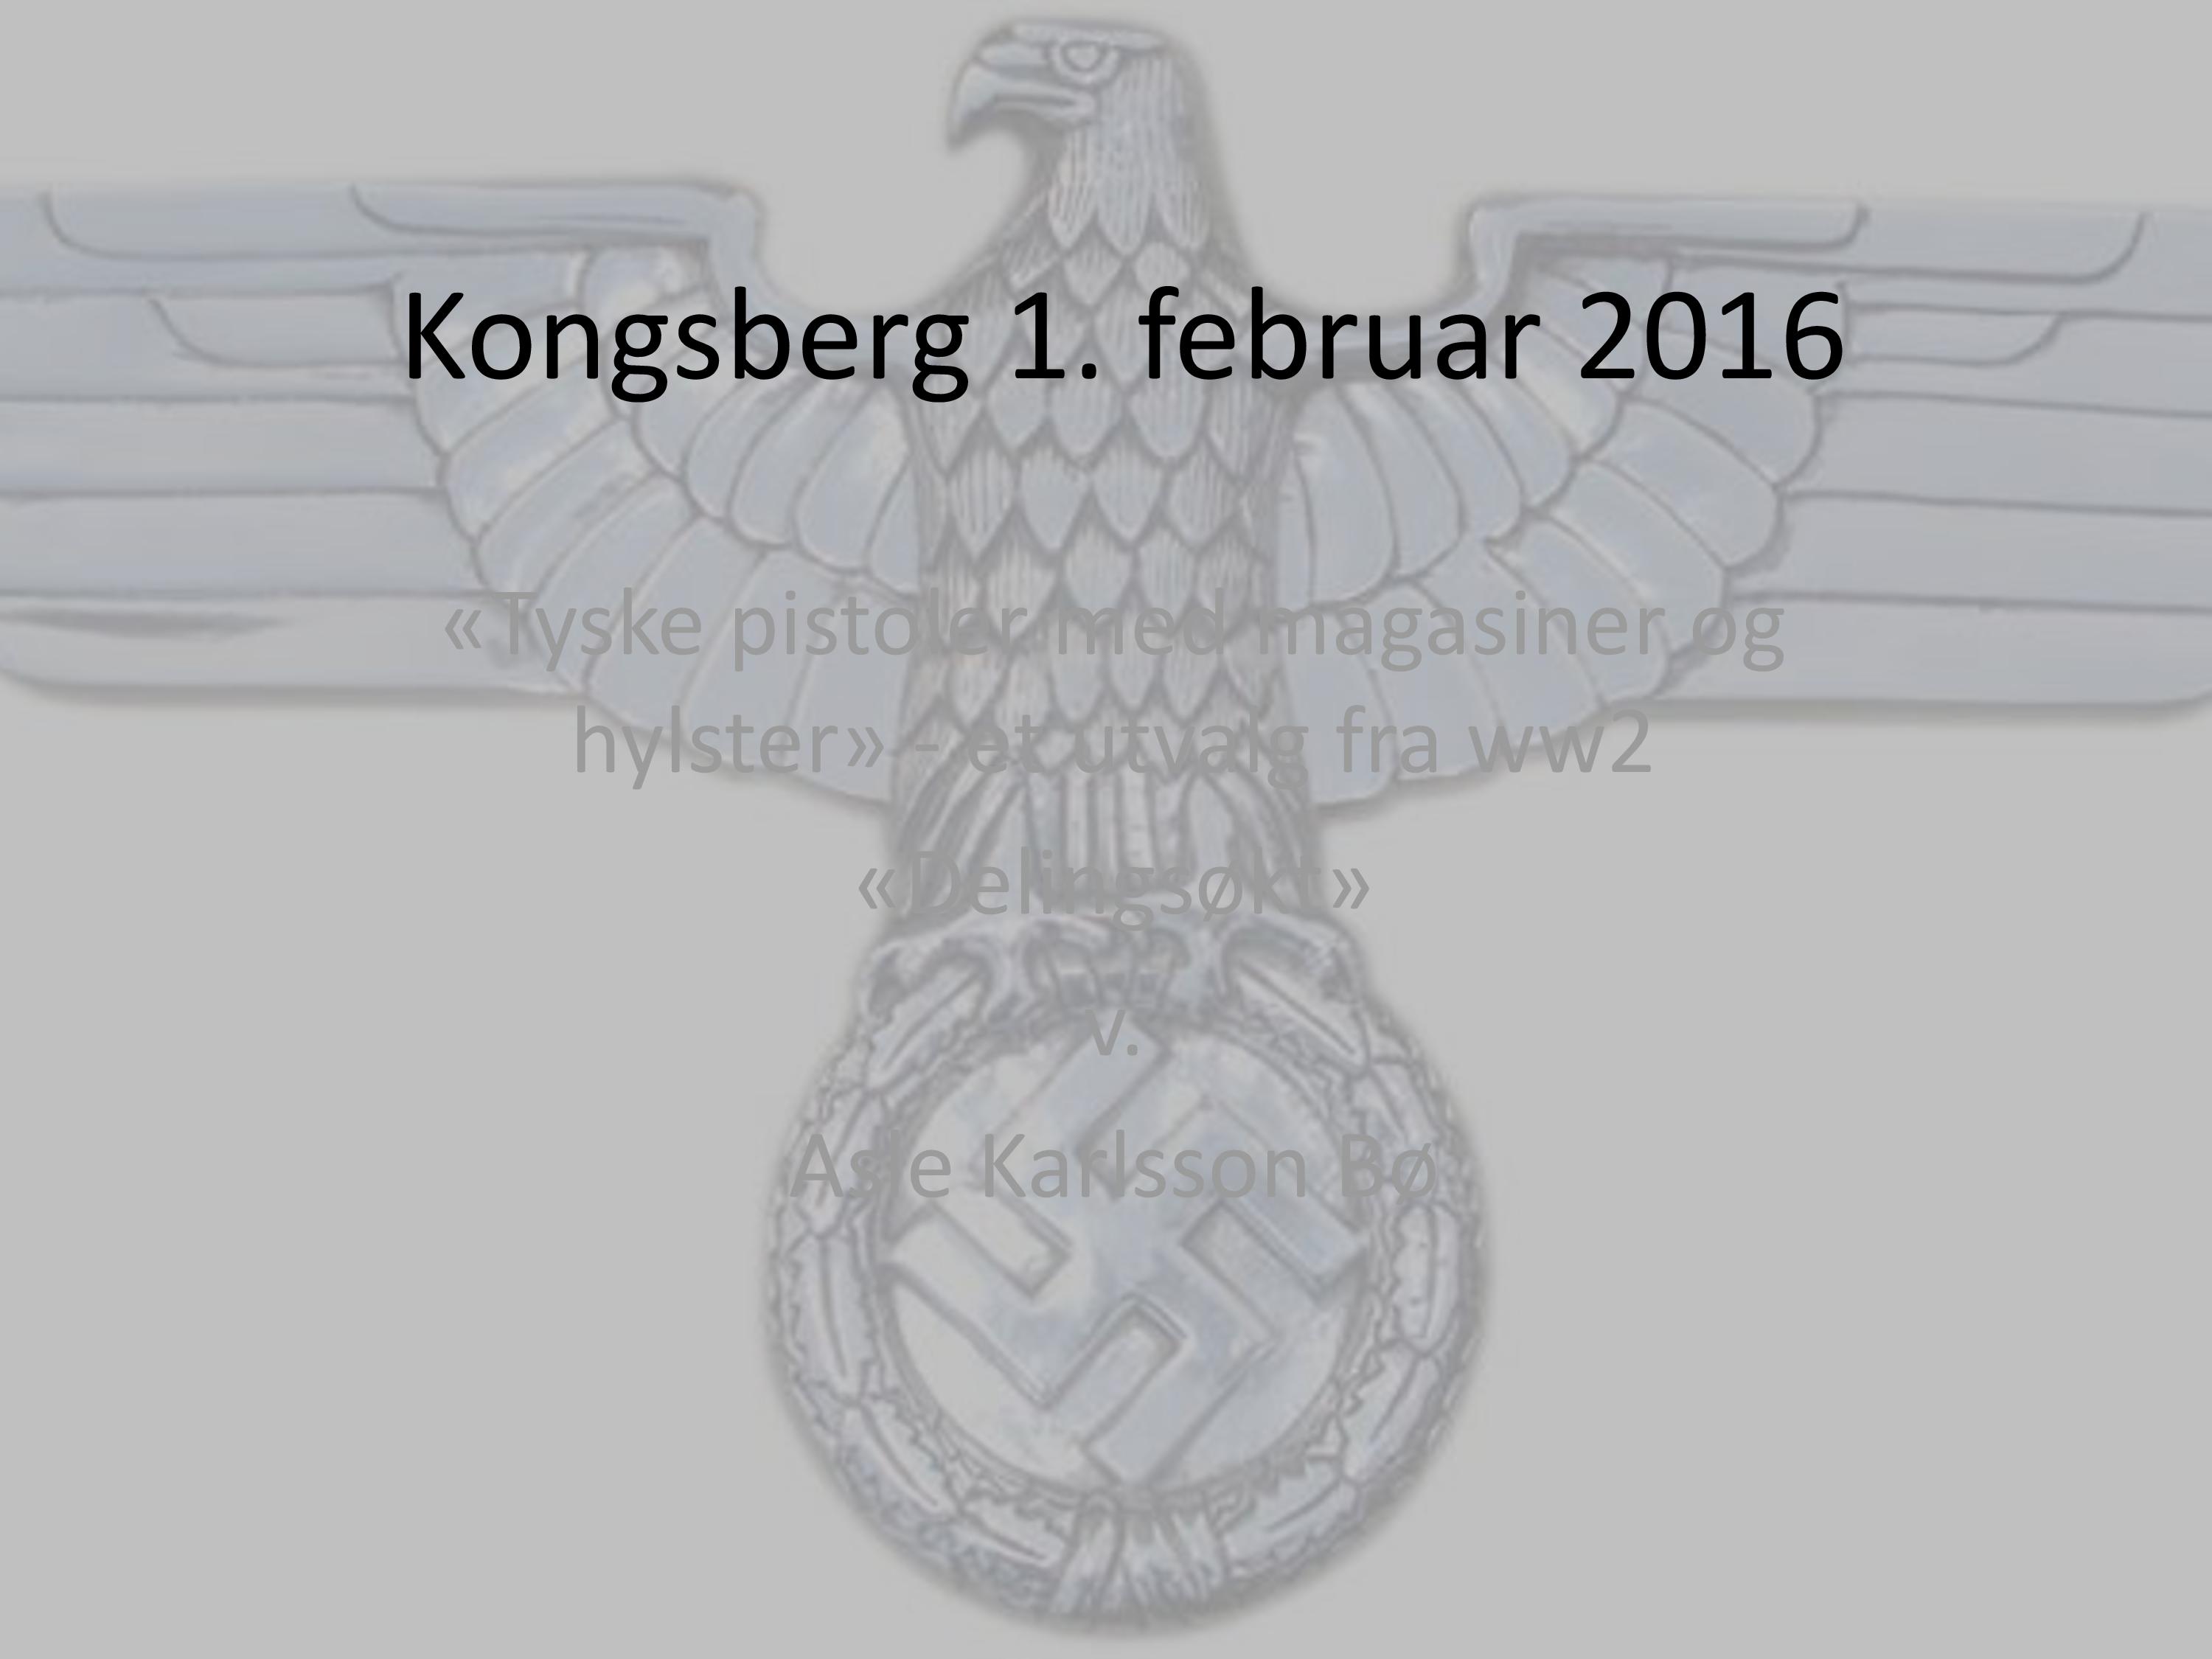 ./doc/presentasjoner/tyskpist/Tyske-Pistoler-KVF-page-001.jpg